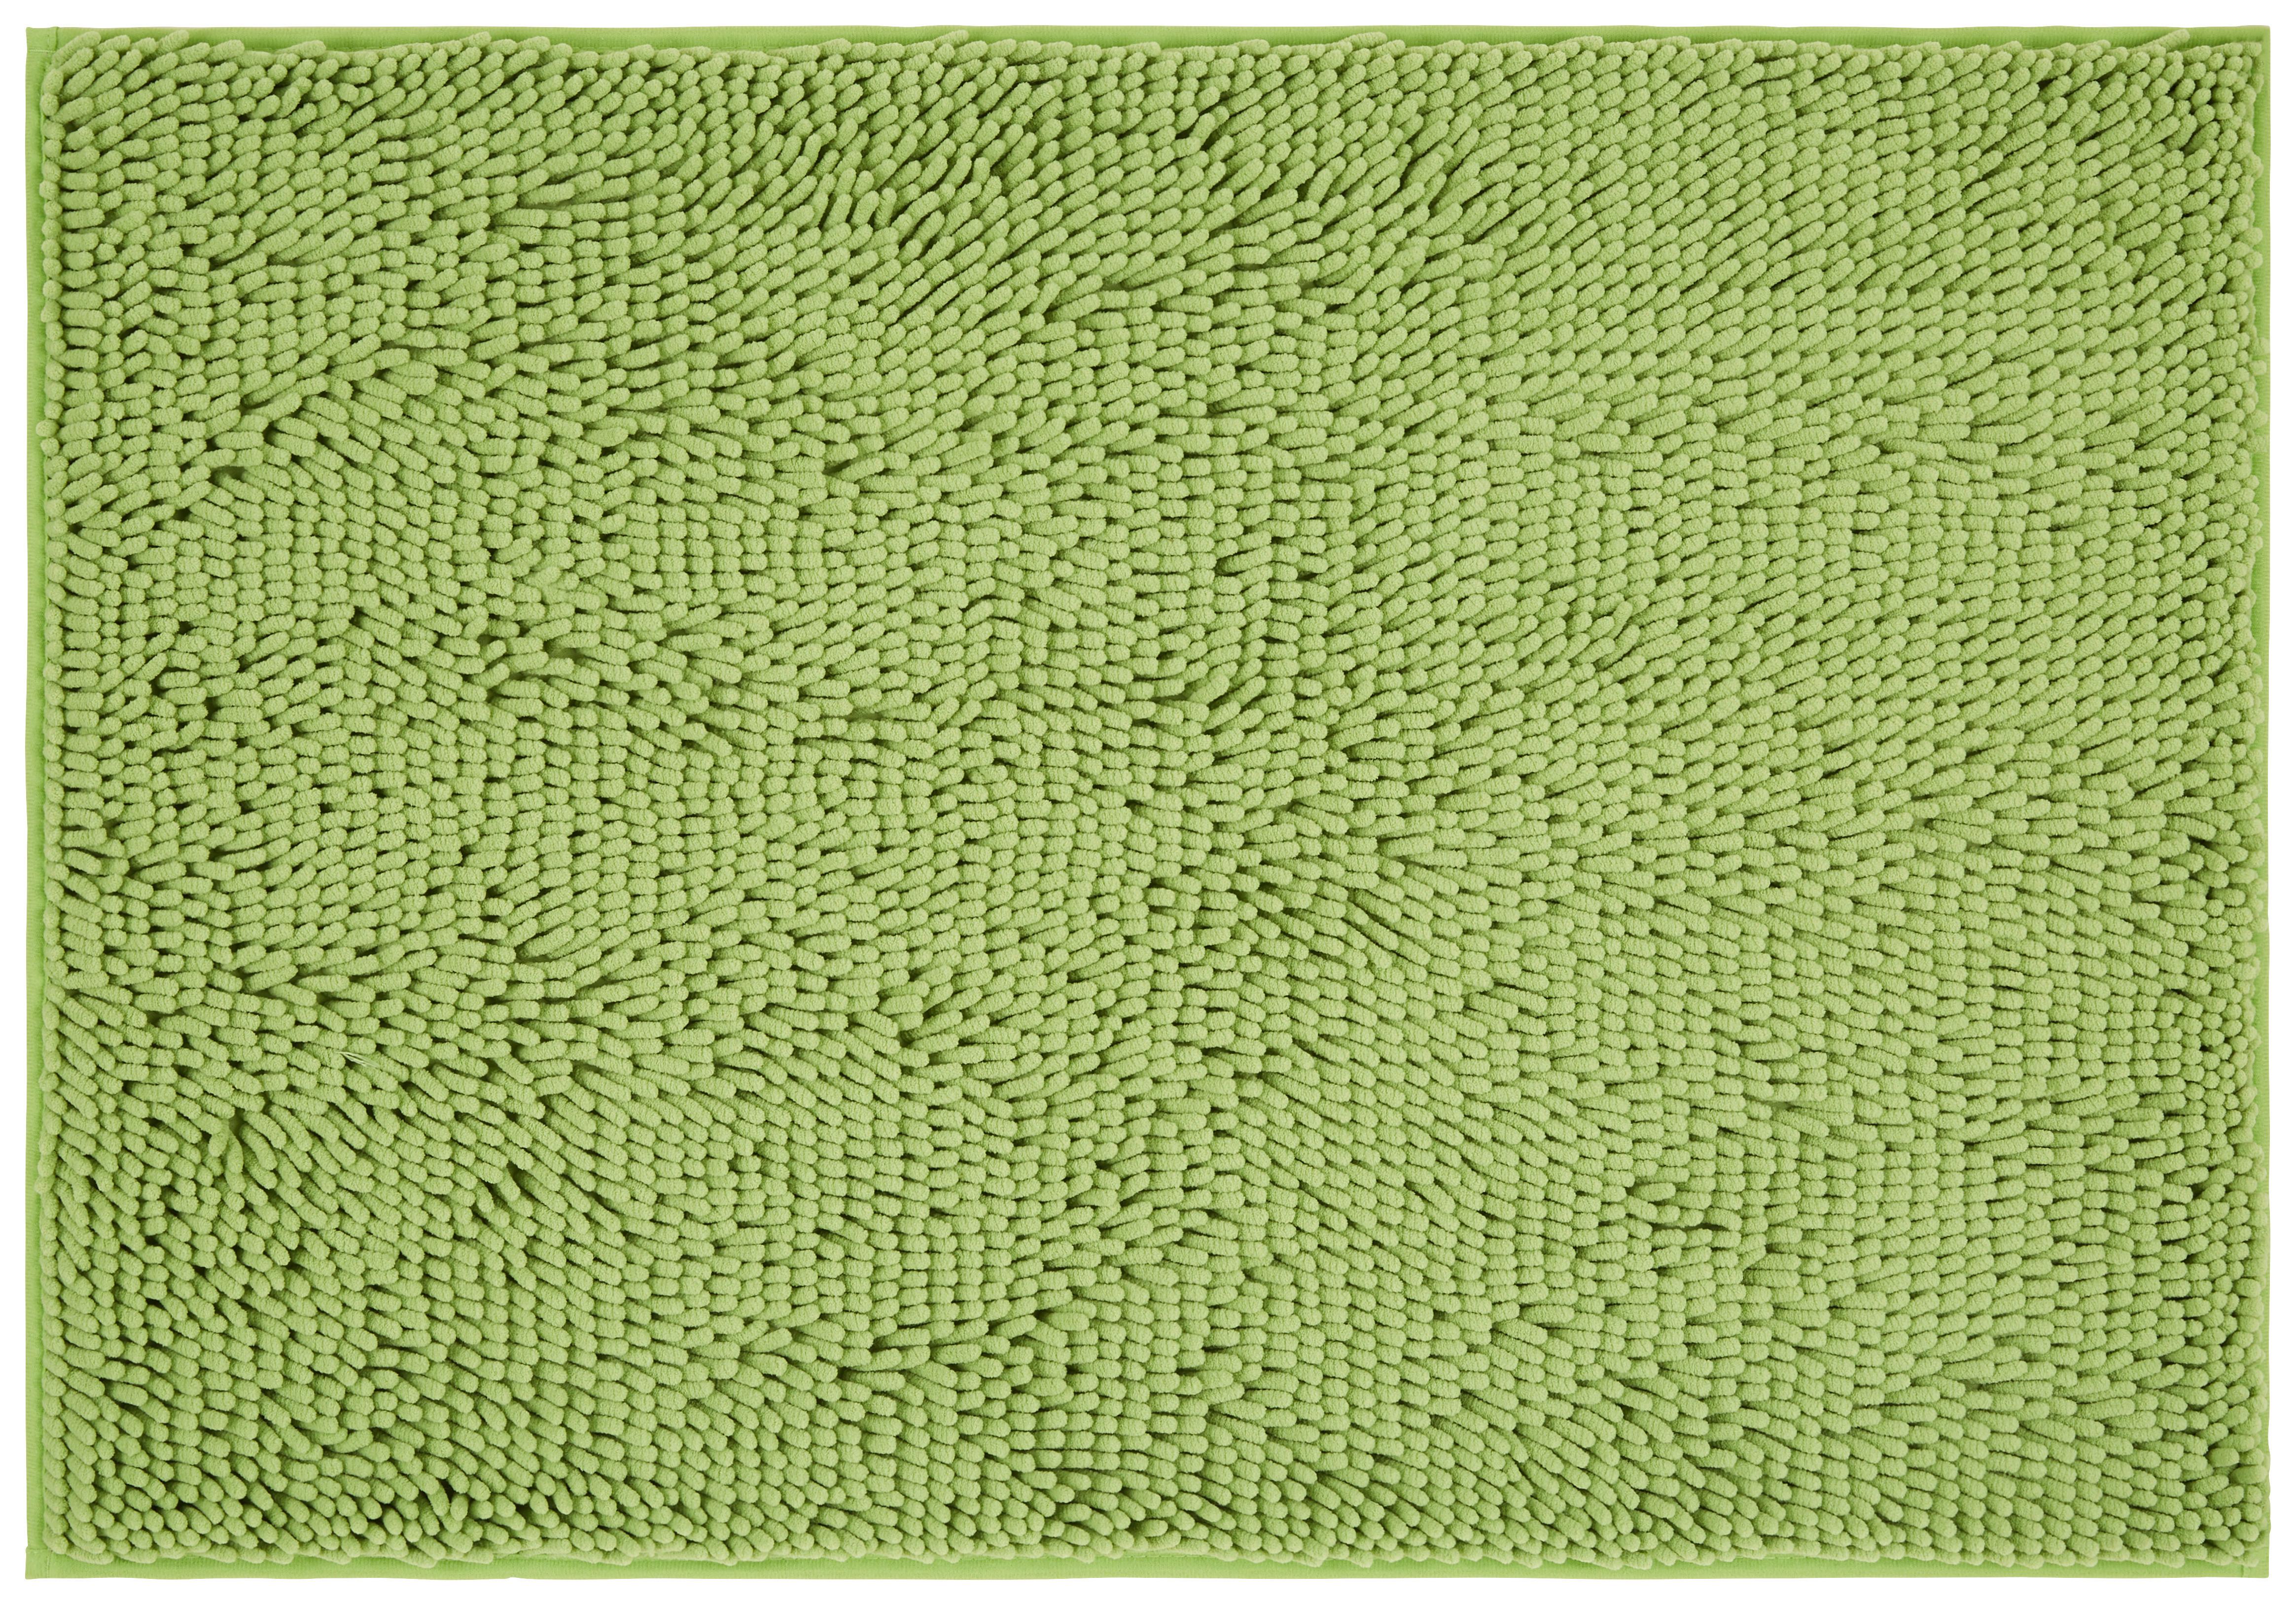 Badematte Liliane Grün 70x120 cm Rutschhemmend - Grün, KONVENTIONELL, Textil (70/120cm) - Ondega